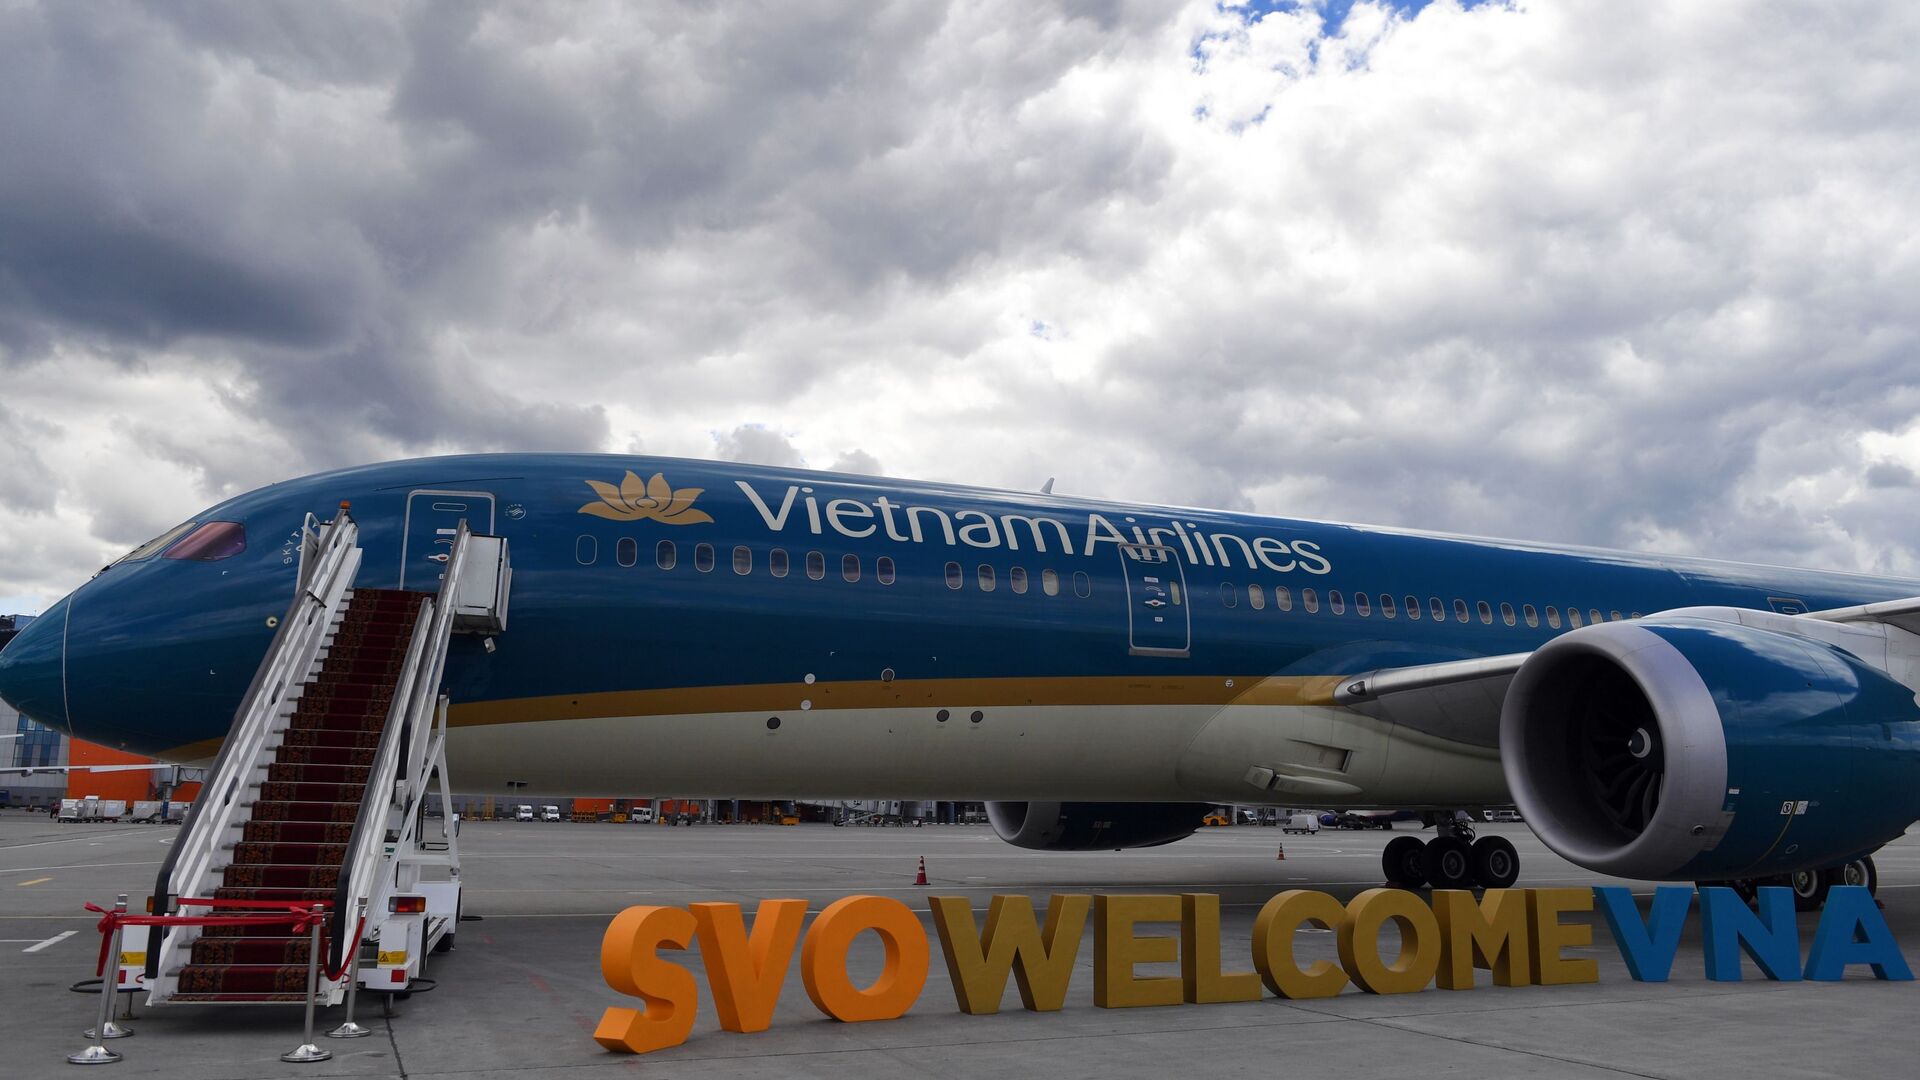 Nghi lễ trọng thể đón chào máy bay của Hãng Vietnam Airlines tại sân bay quốc tế “Sheremetyevo”  - Sputnik Việt Nam, 1920, 03.02.2021